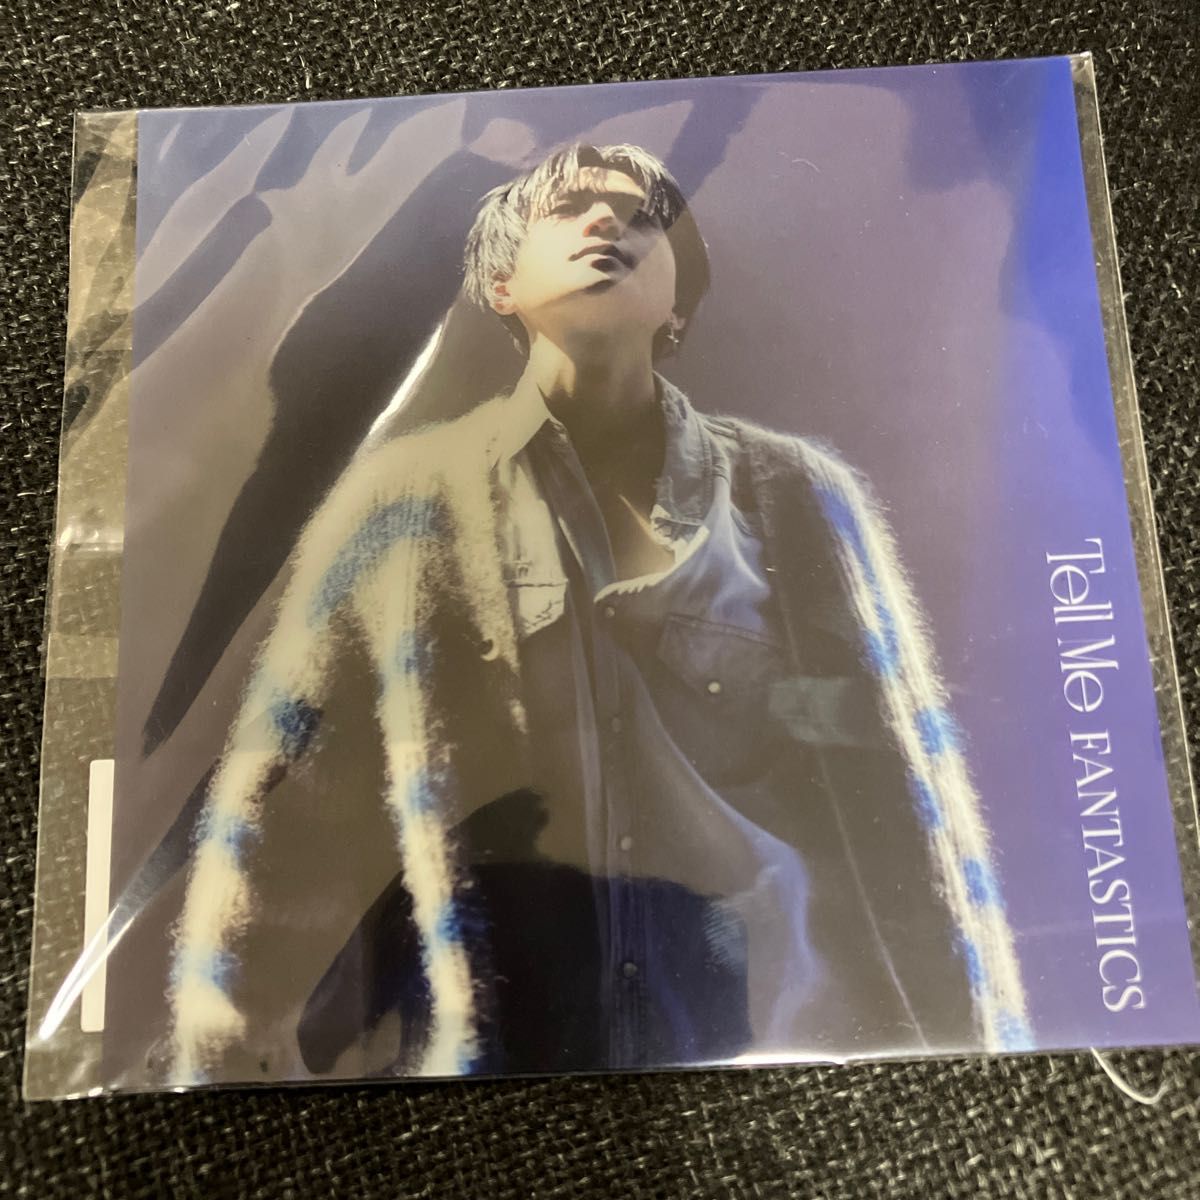 八木勇征ジャケット LIVE盤 (初回仕様) シリアル (初回)FANTASTICS CD+